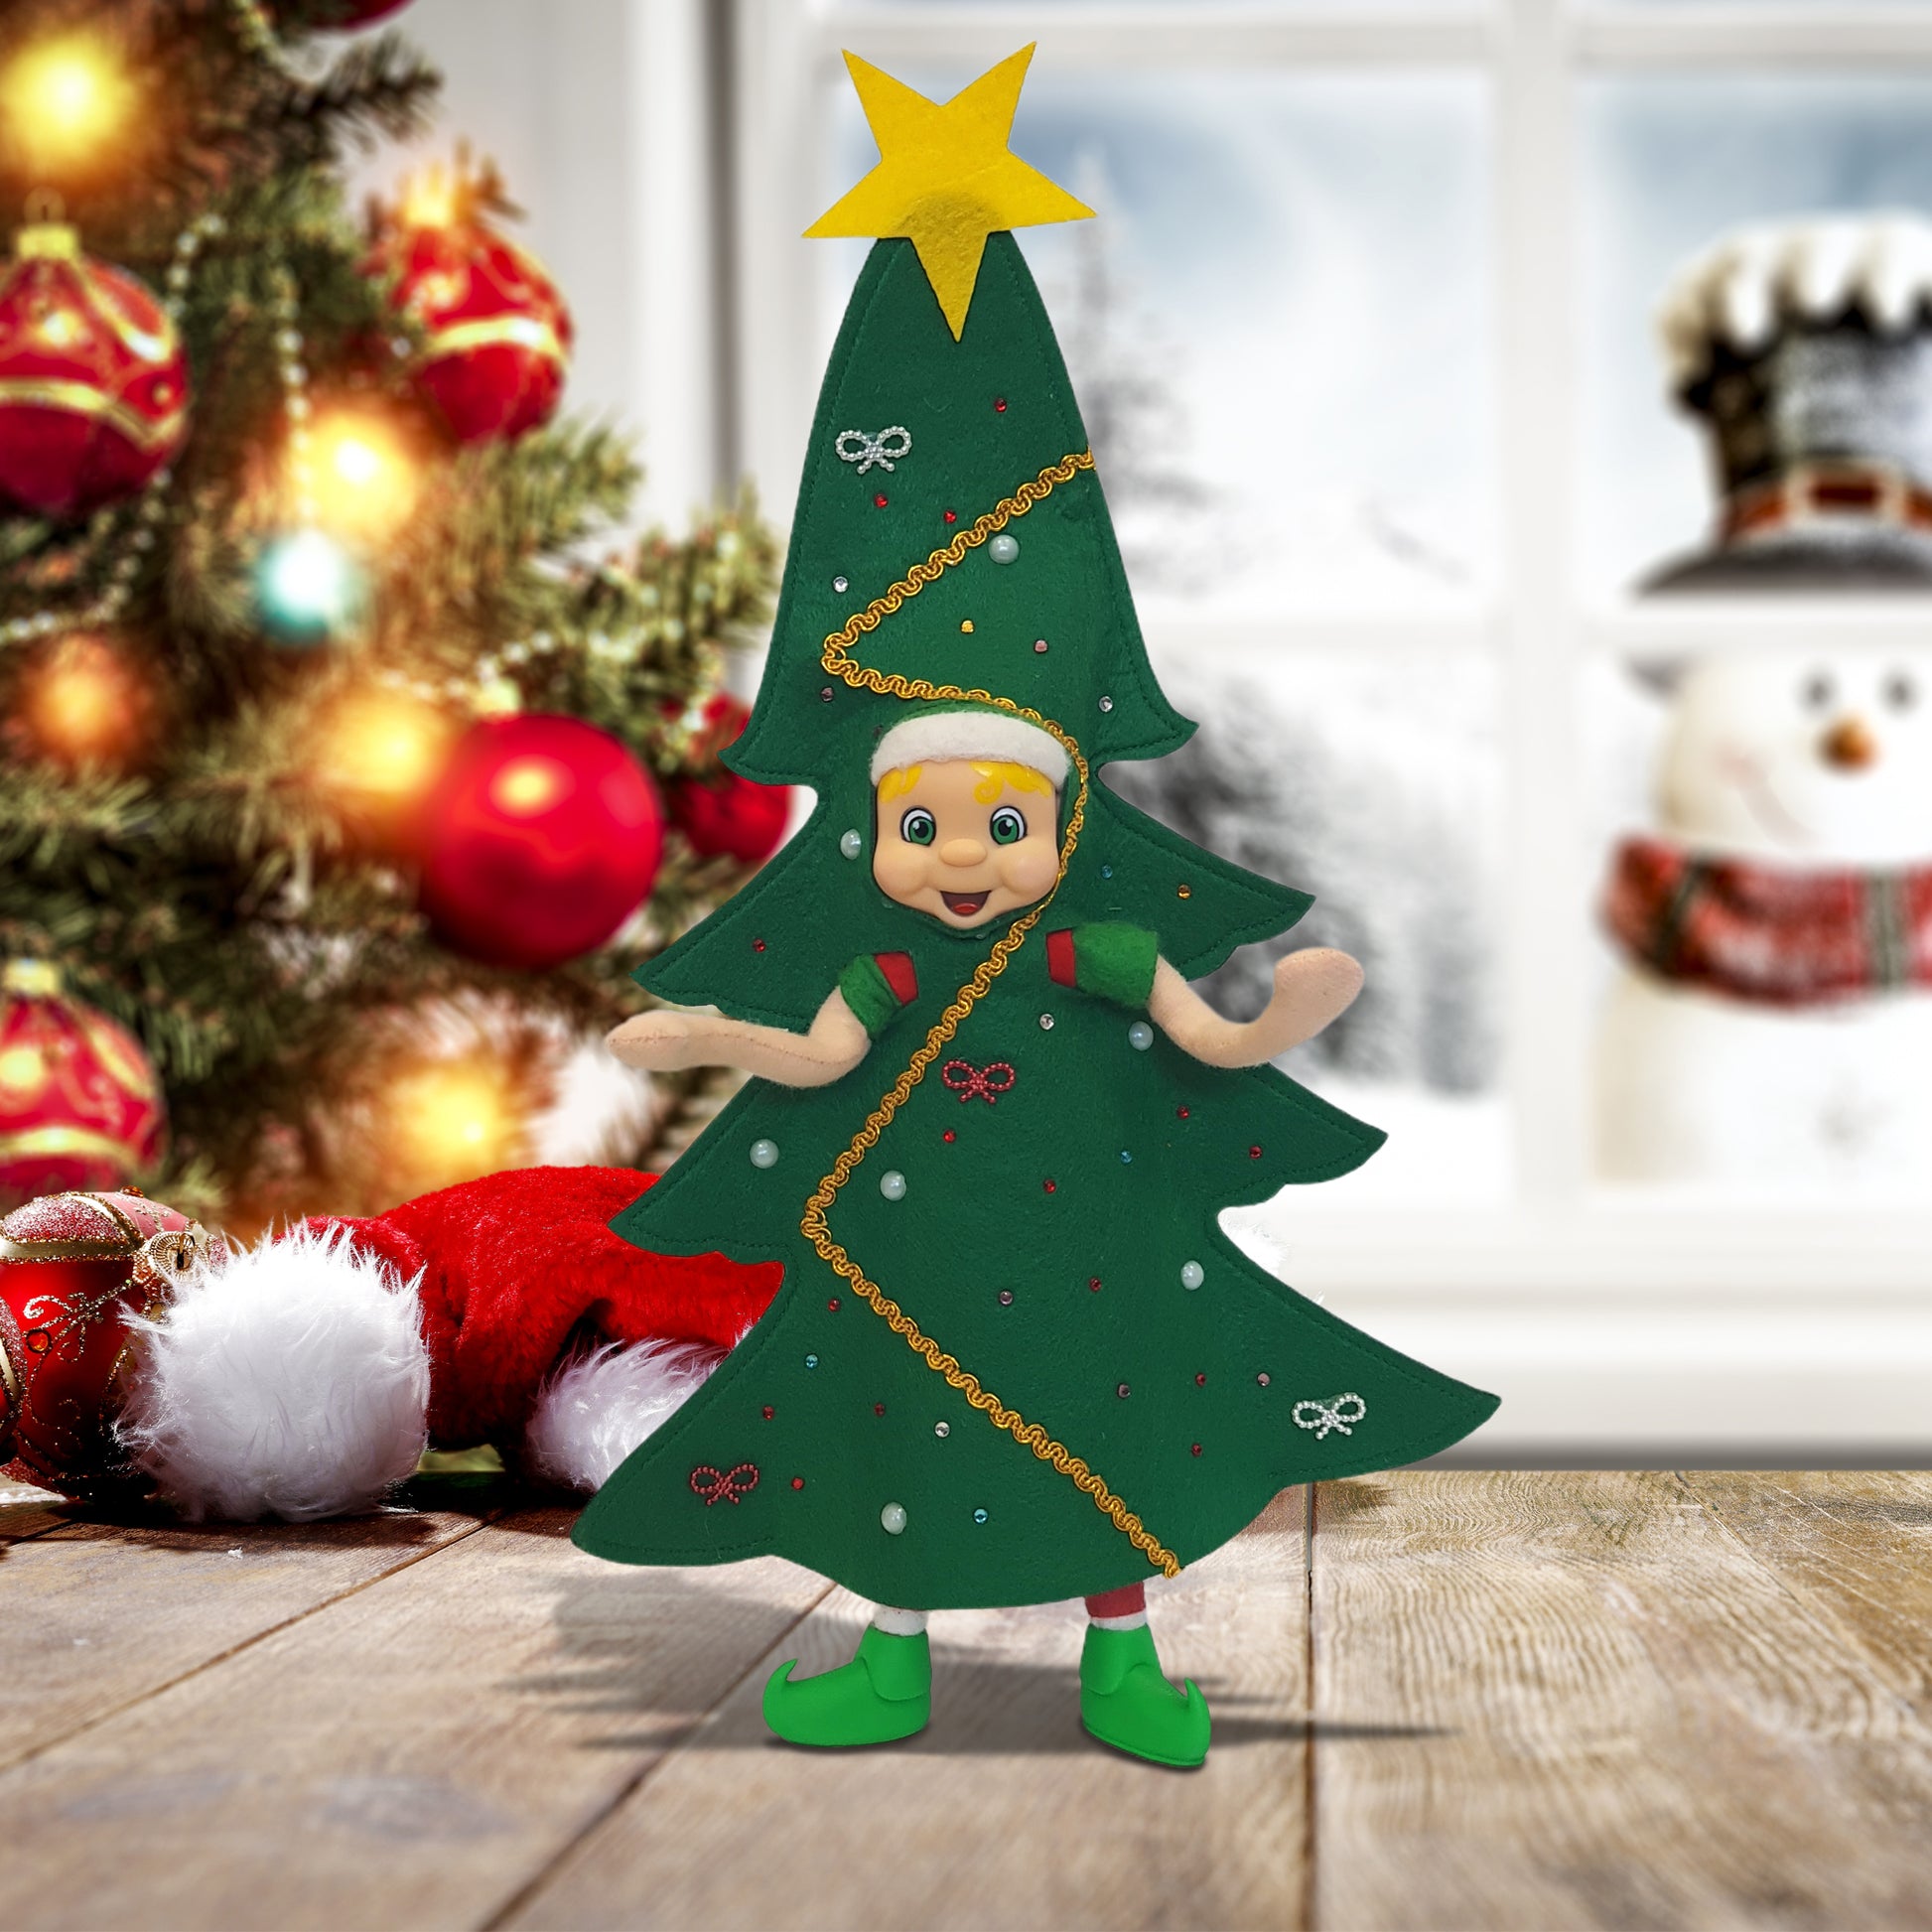 Blonde hair elf dressed as a Christmas tree